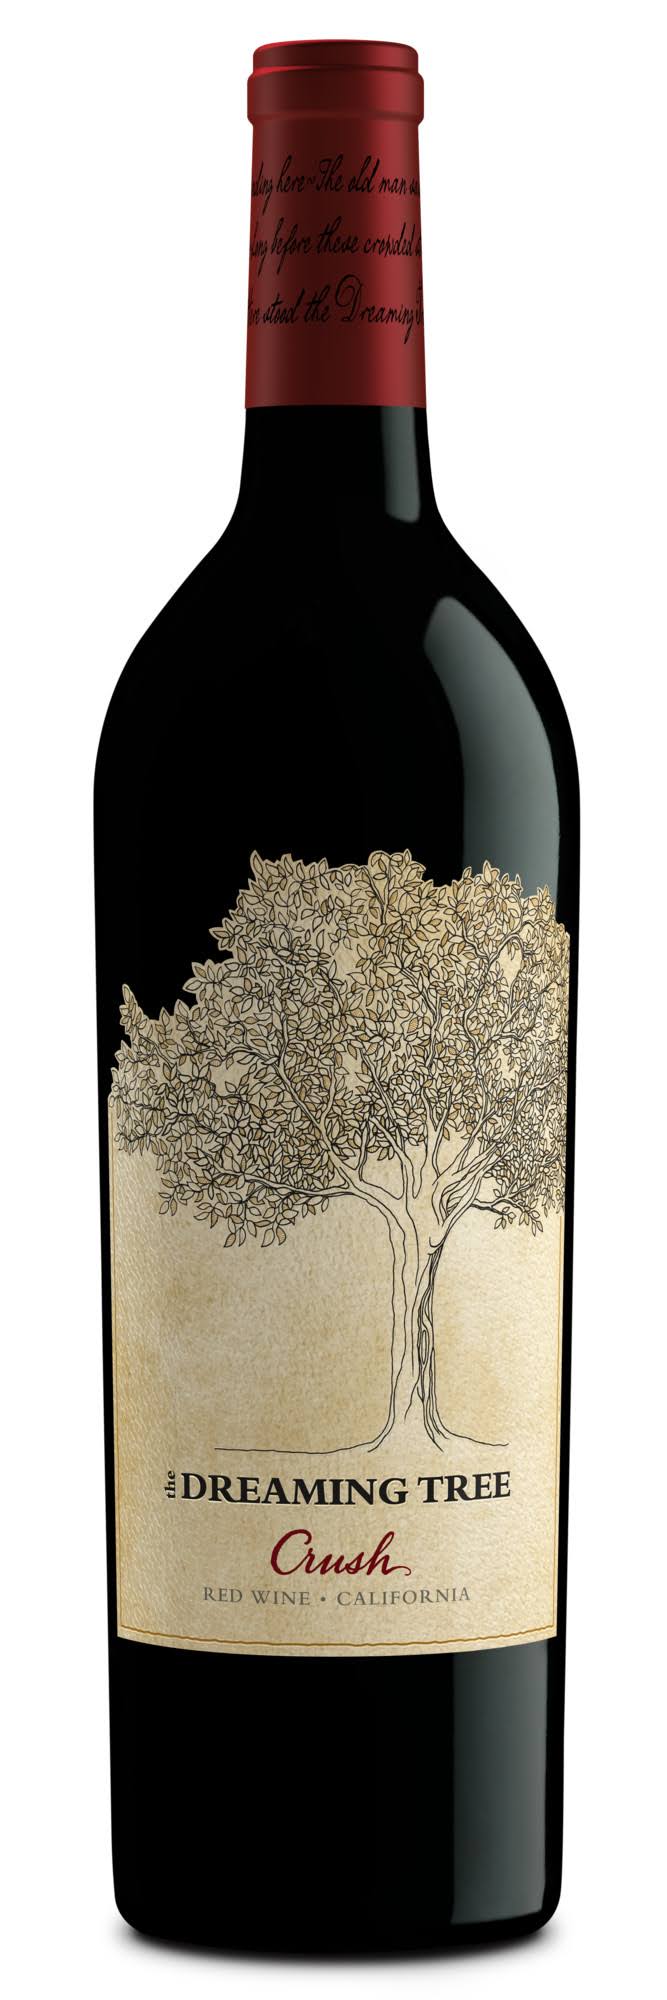 The Dreaming Tree Red Wine, Crush, California - 750 ml